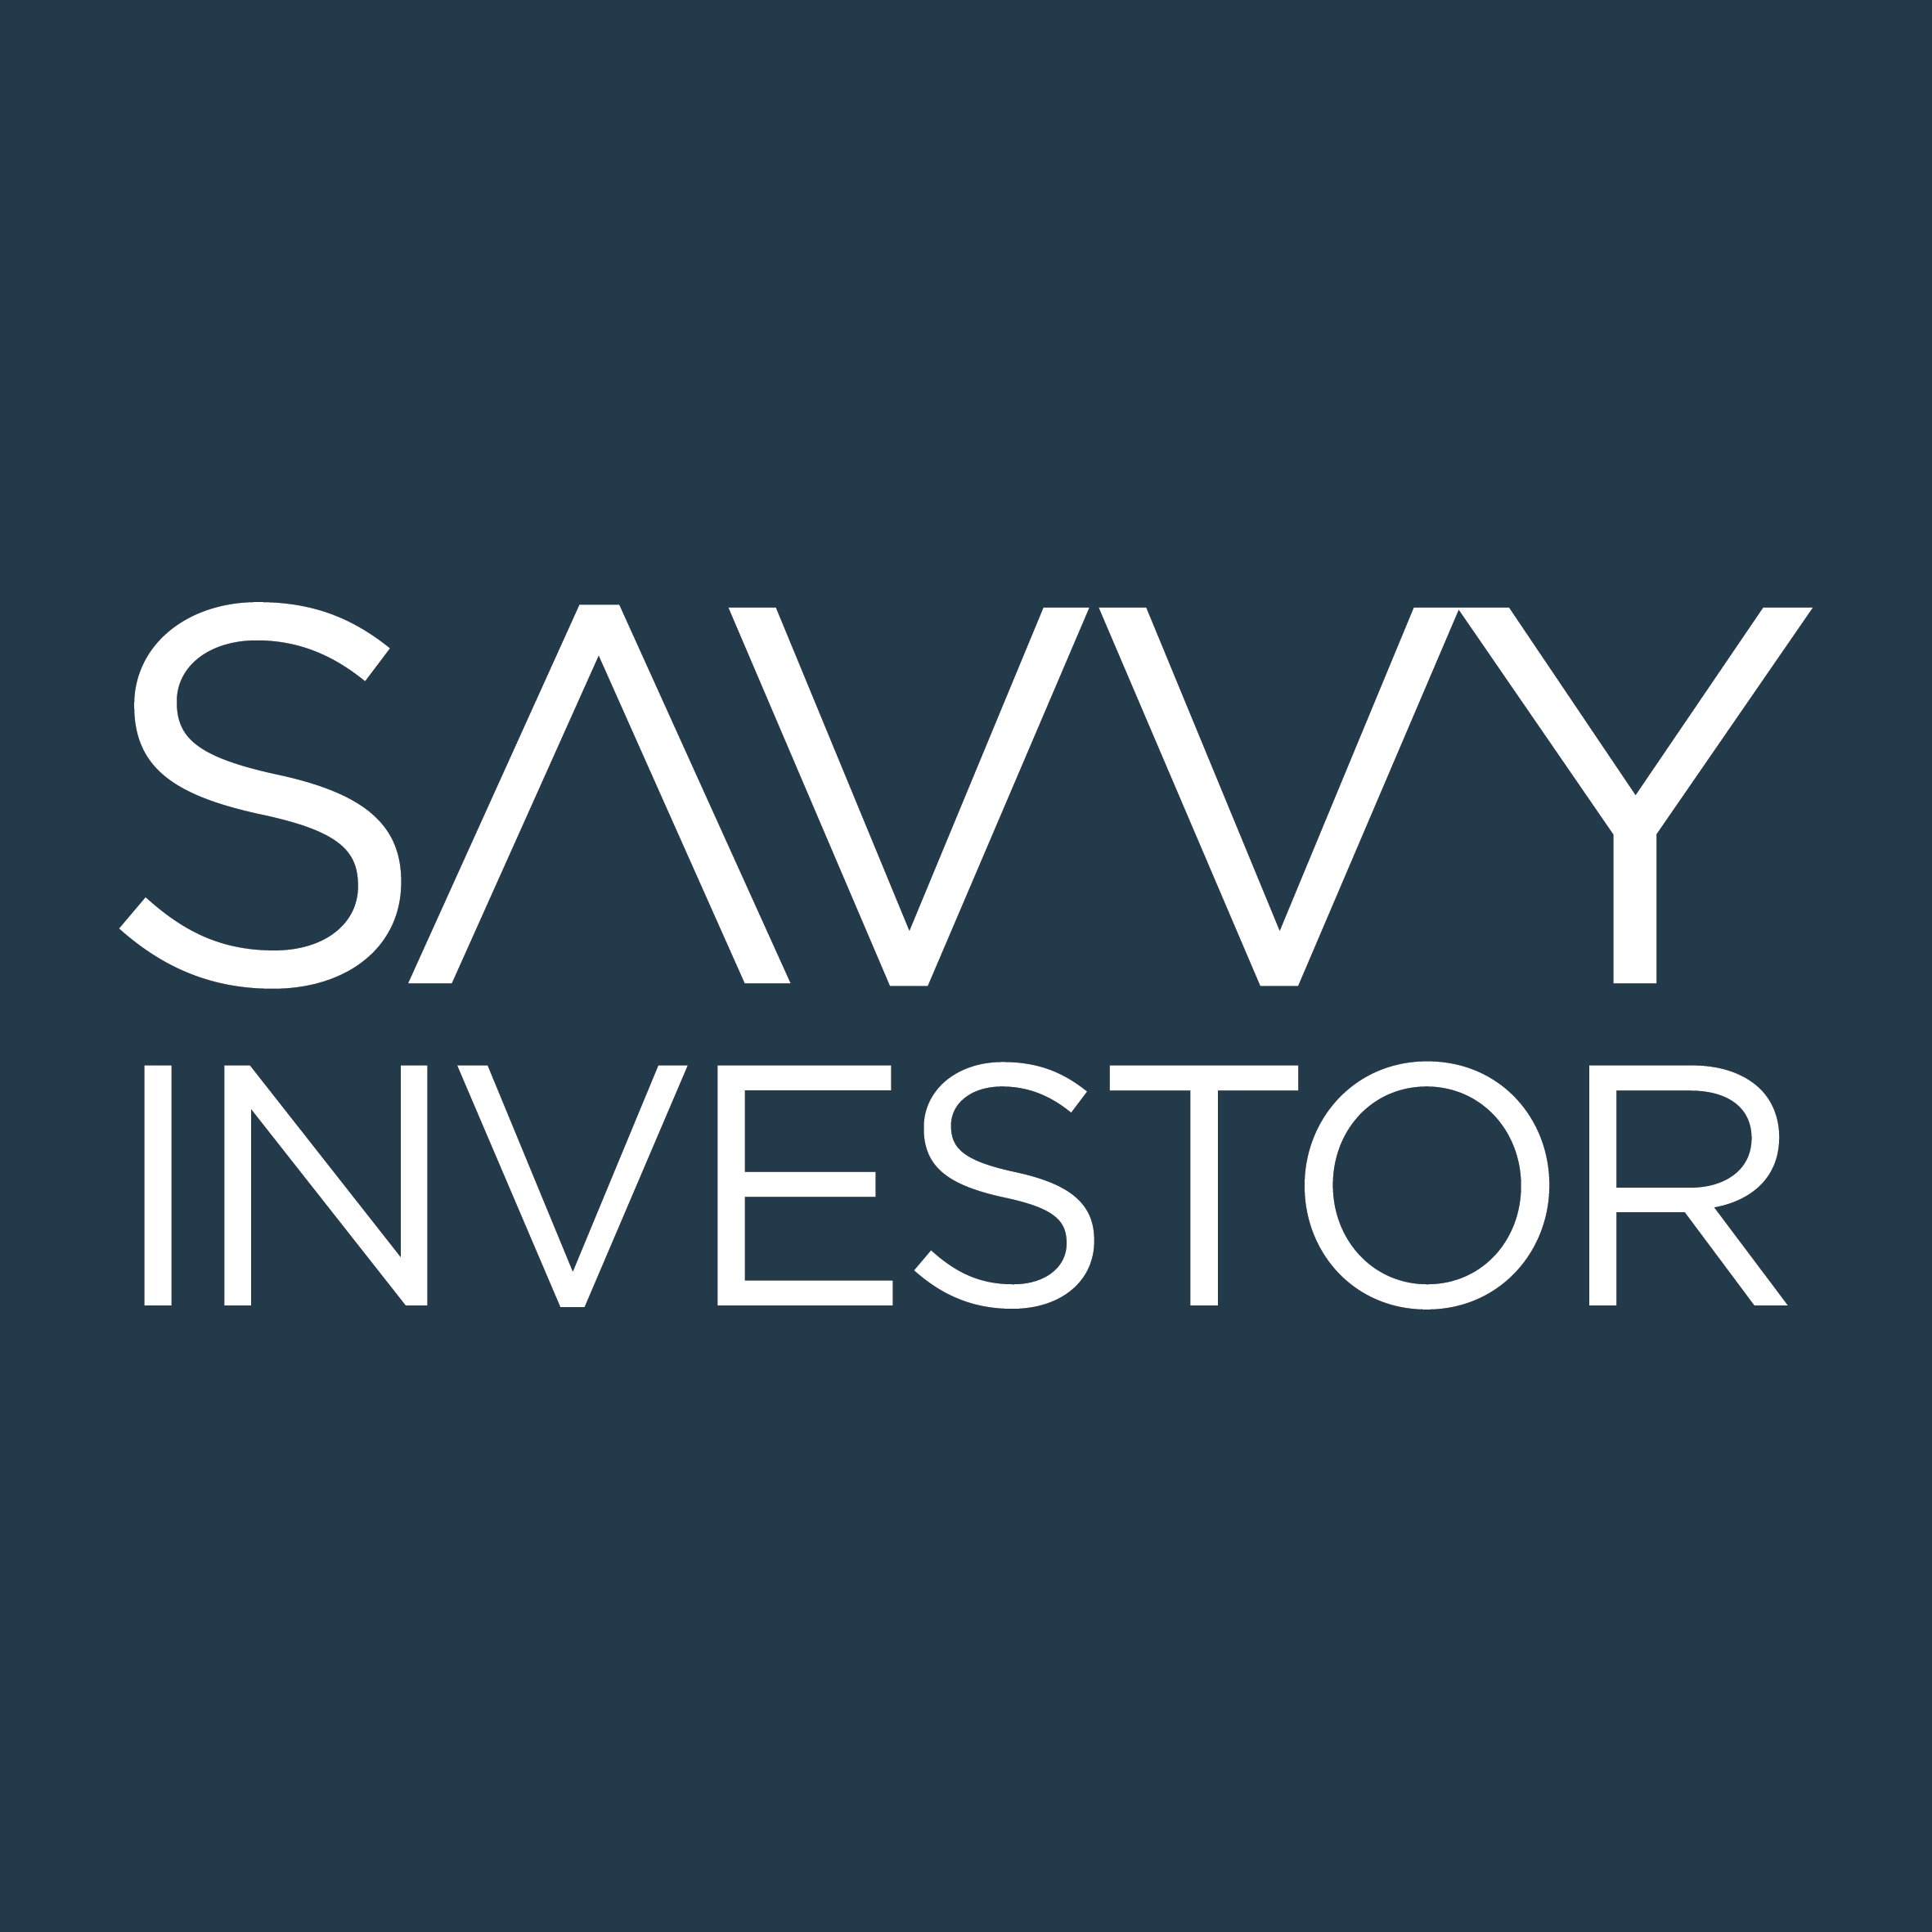 Savvy Investor media partner